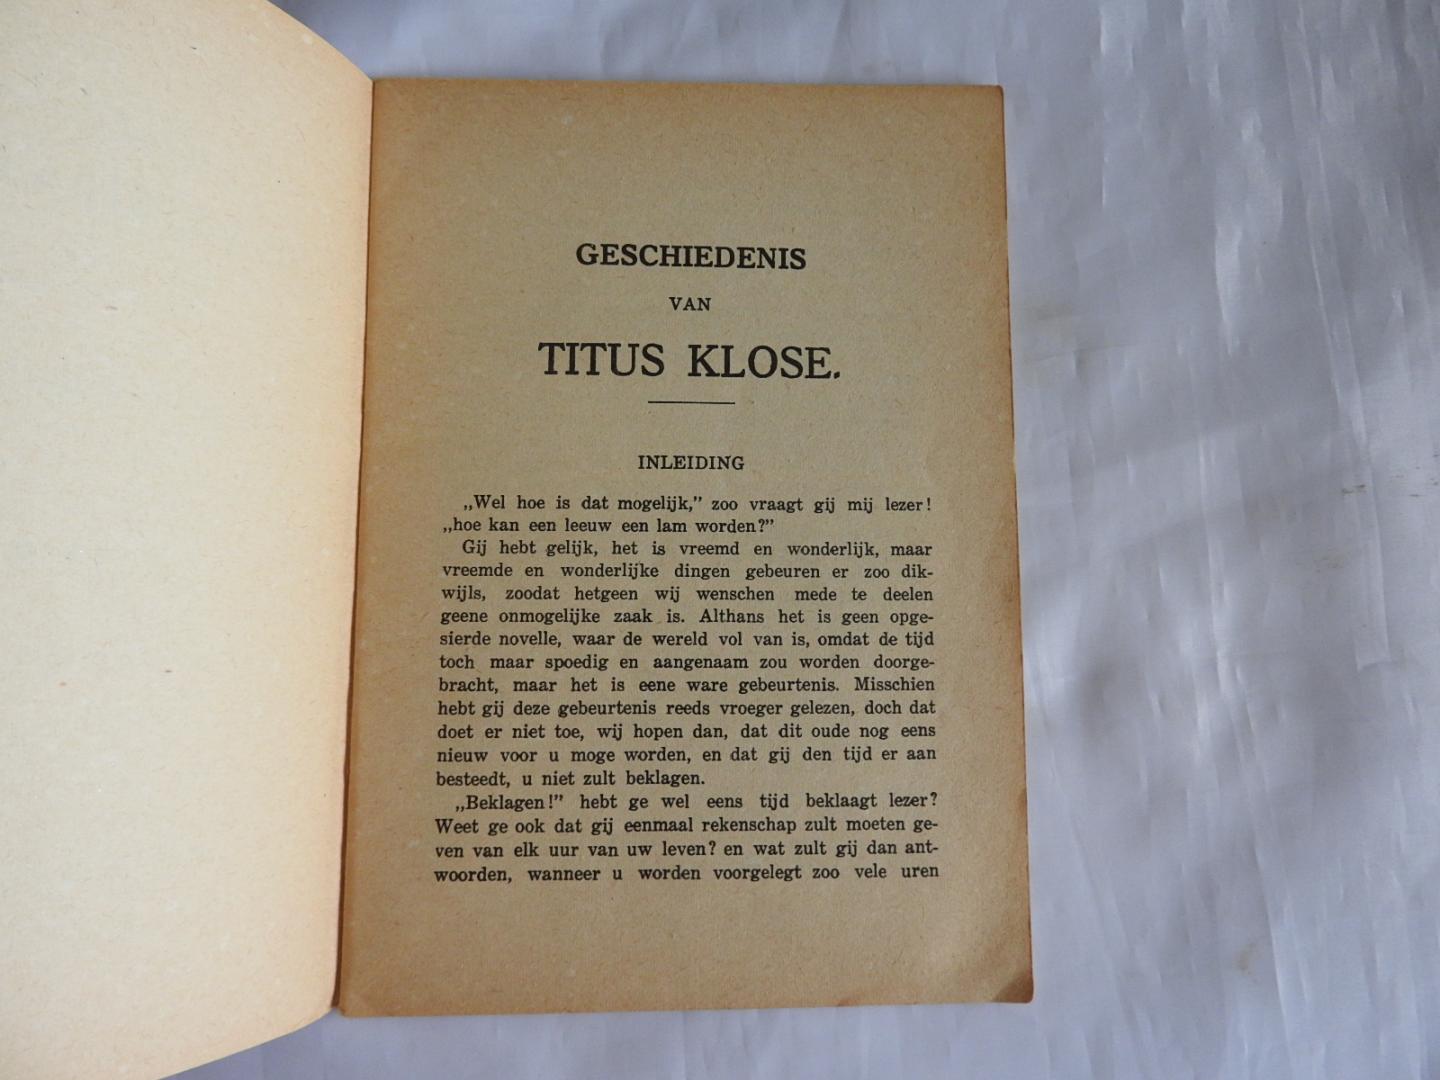 Titus Klose - Gods groote barmhartigheid medegedeeld in eenige bijzonderheden uit het leven van Titus Klose --- Overleden 10 Juni 1833